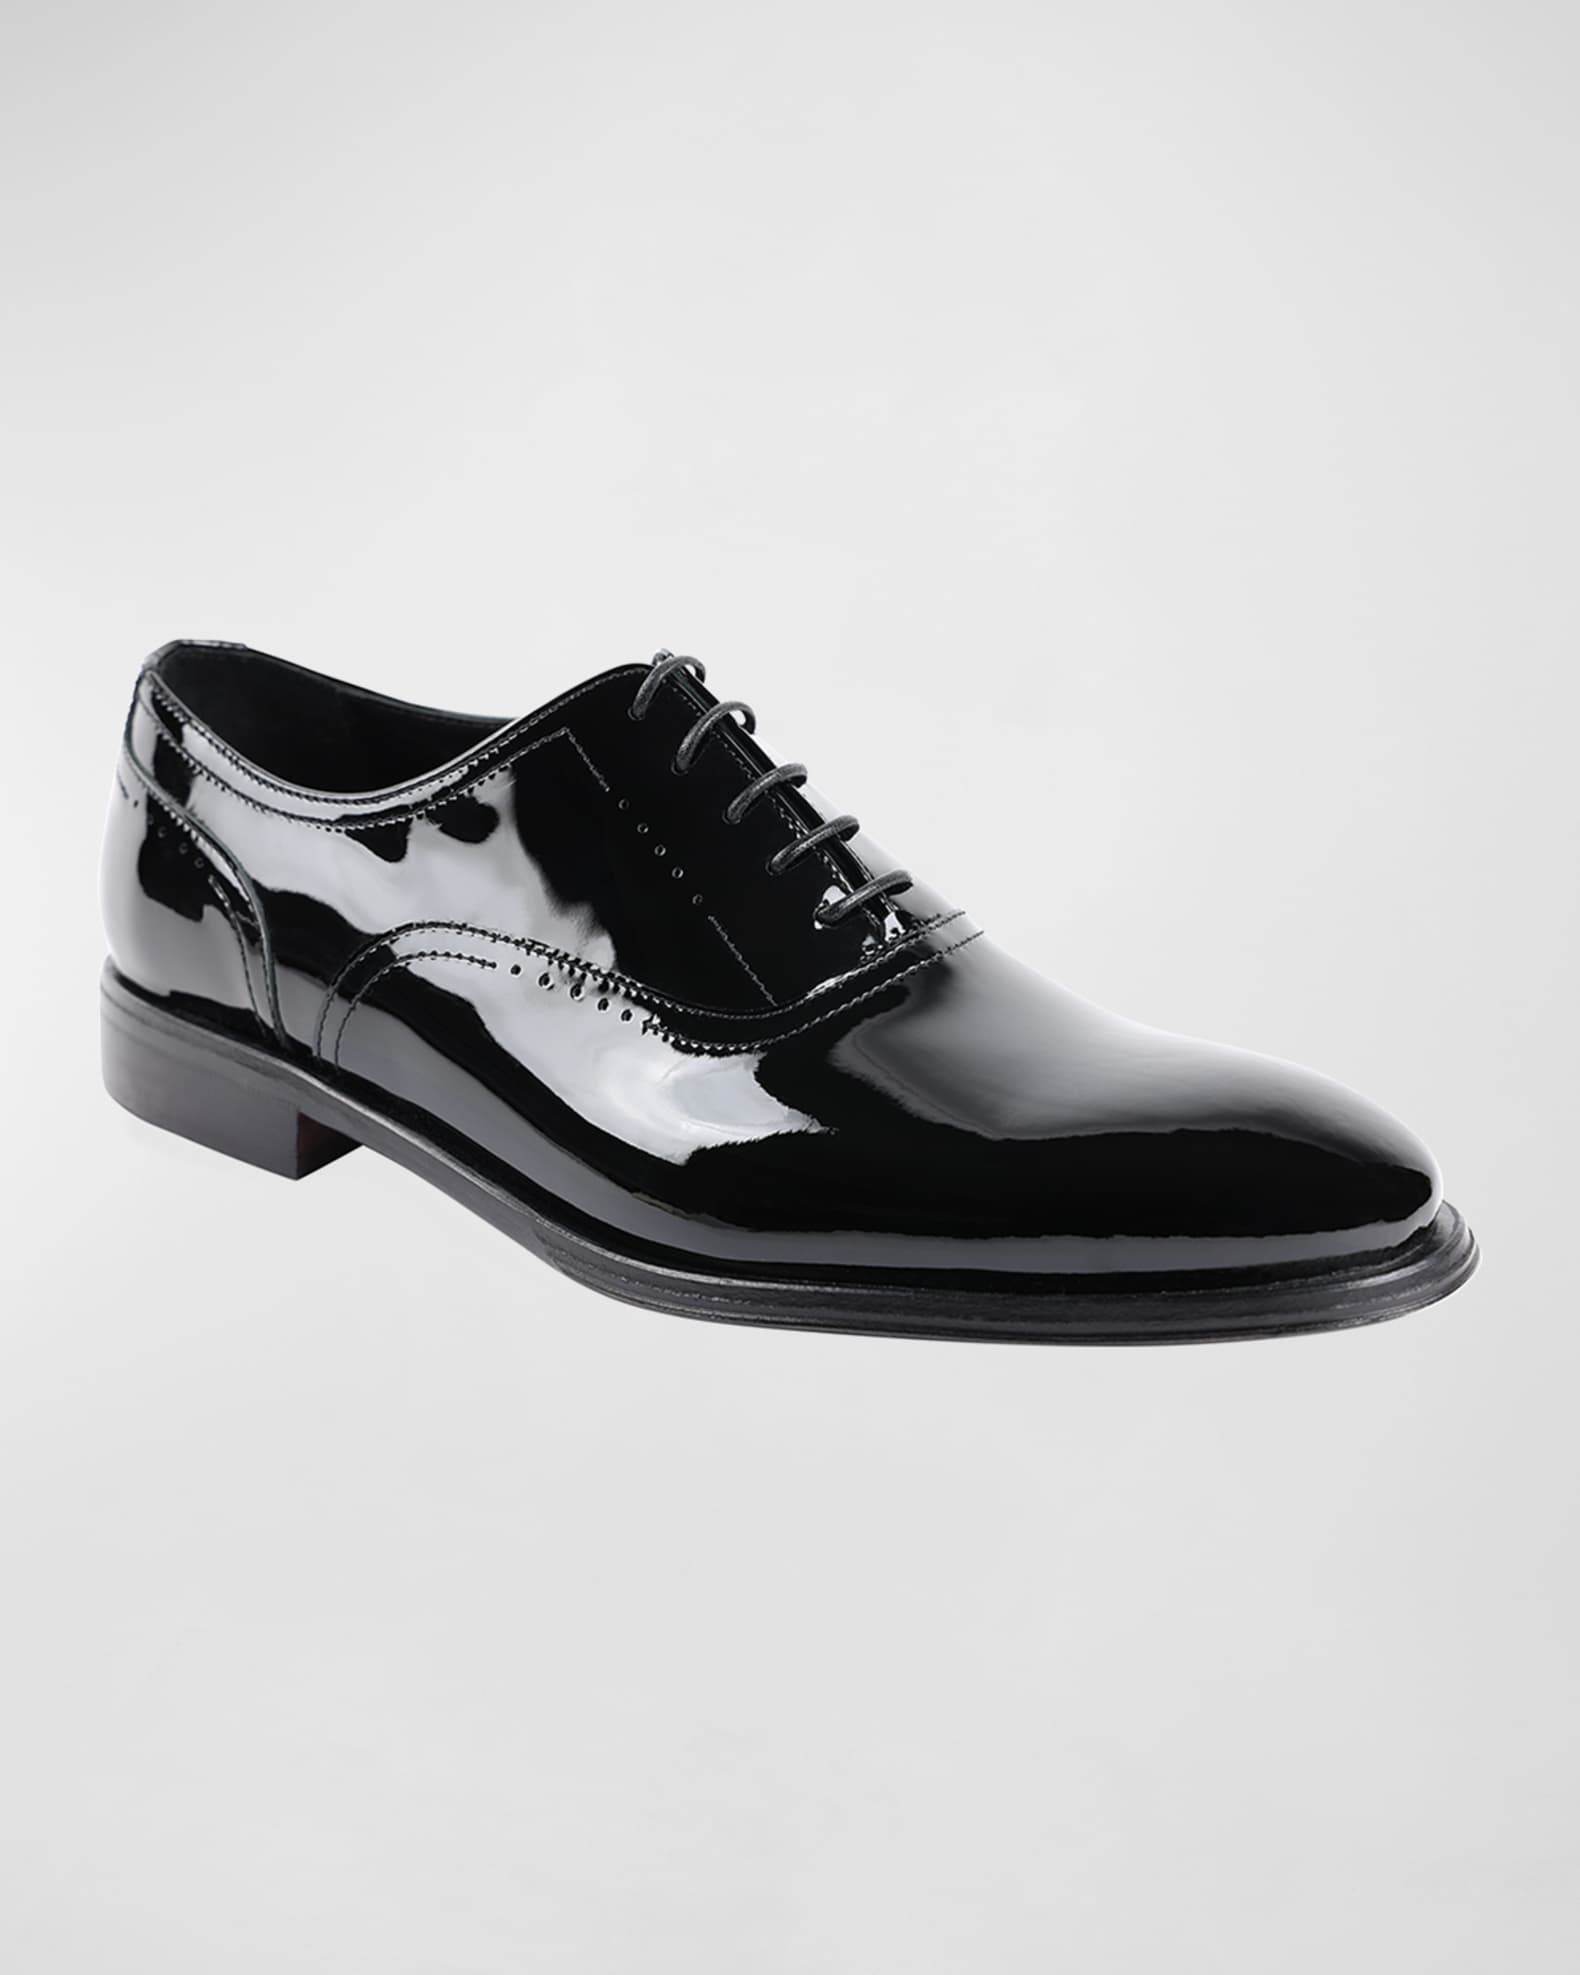 Bruno Magli Men's Arno Sera Patent Leather Oxford Shoes | Neiman Marcus